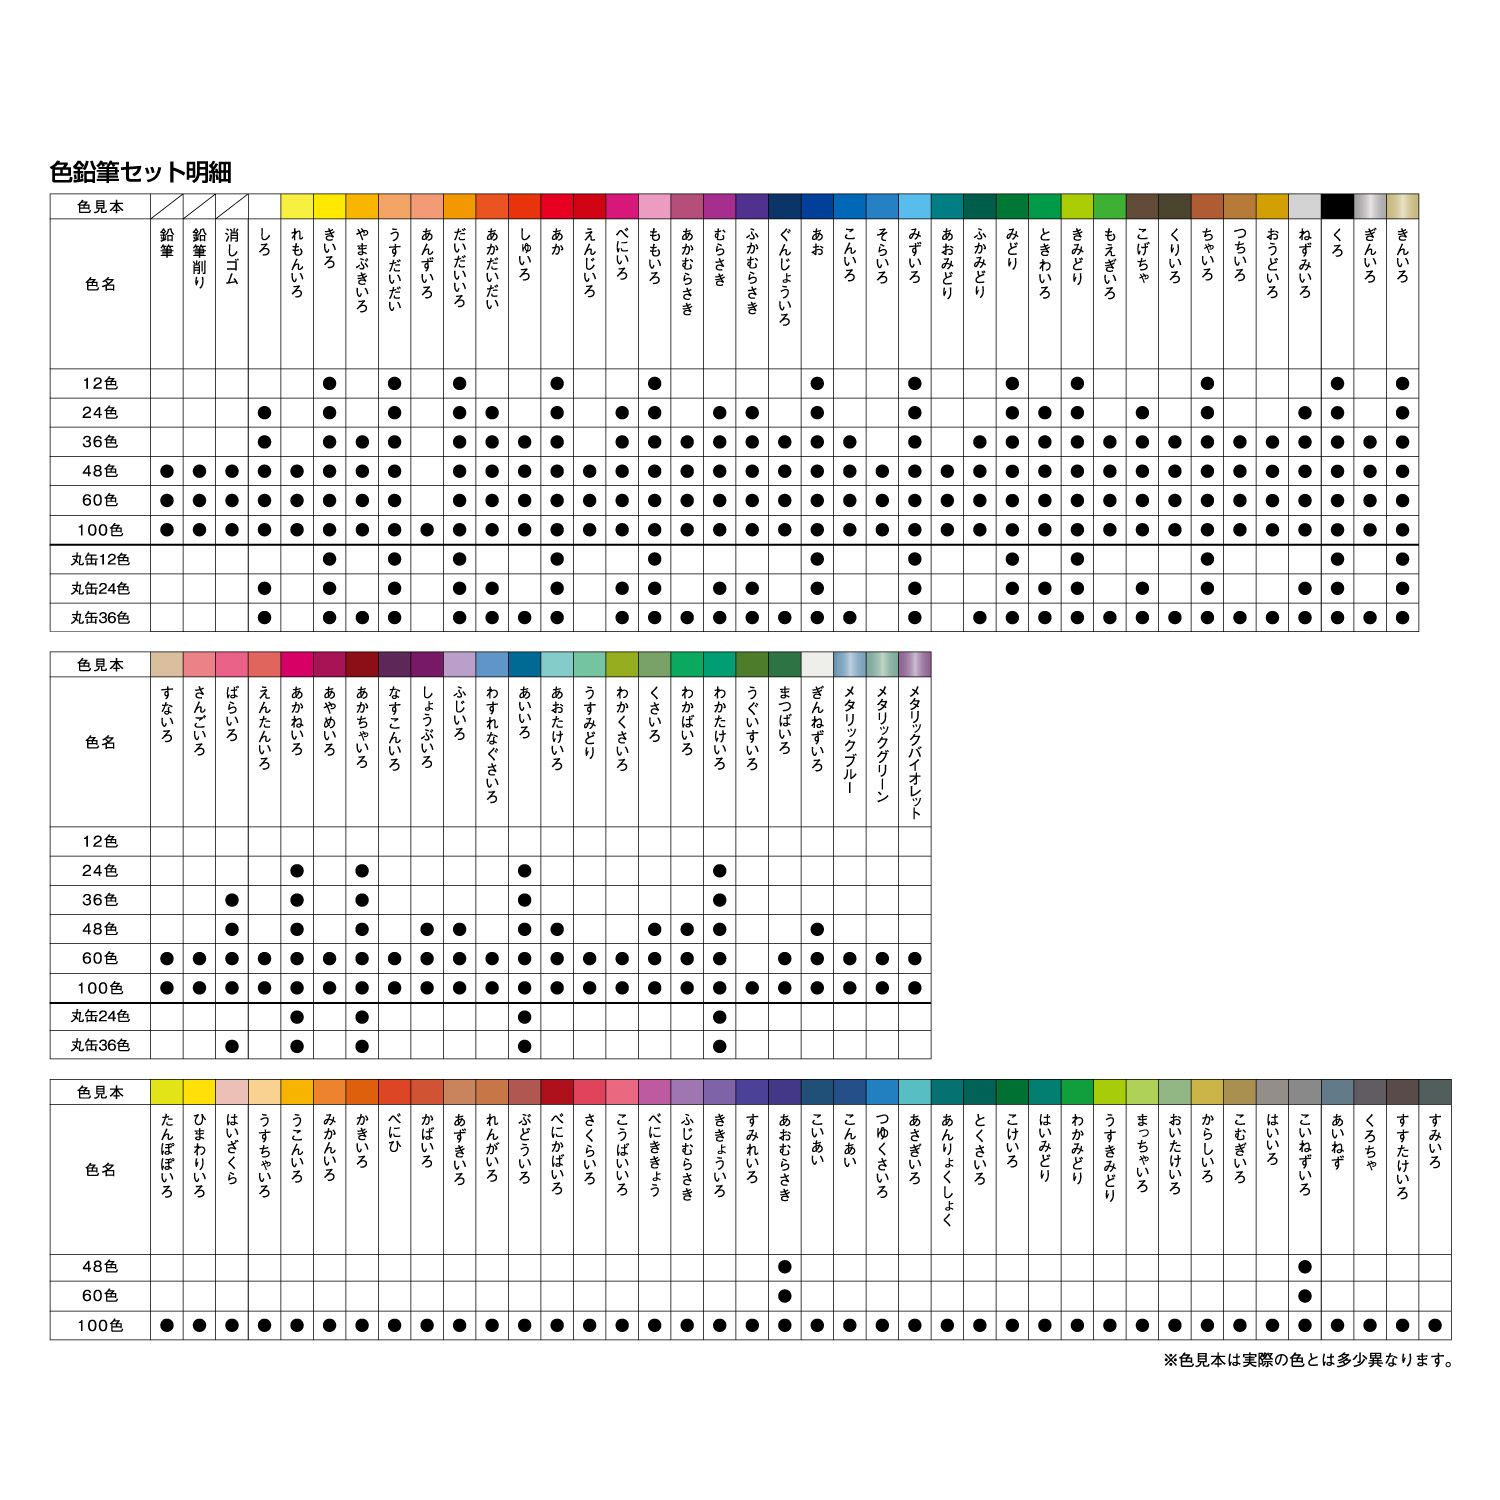 ファーバーカステル 色鉛筆 24色セット|TFC-CP/24C|商品カタログ|シヤチハタ株式会社